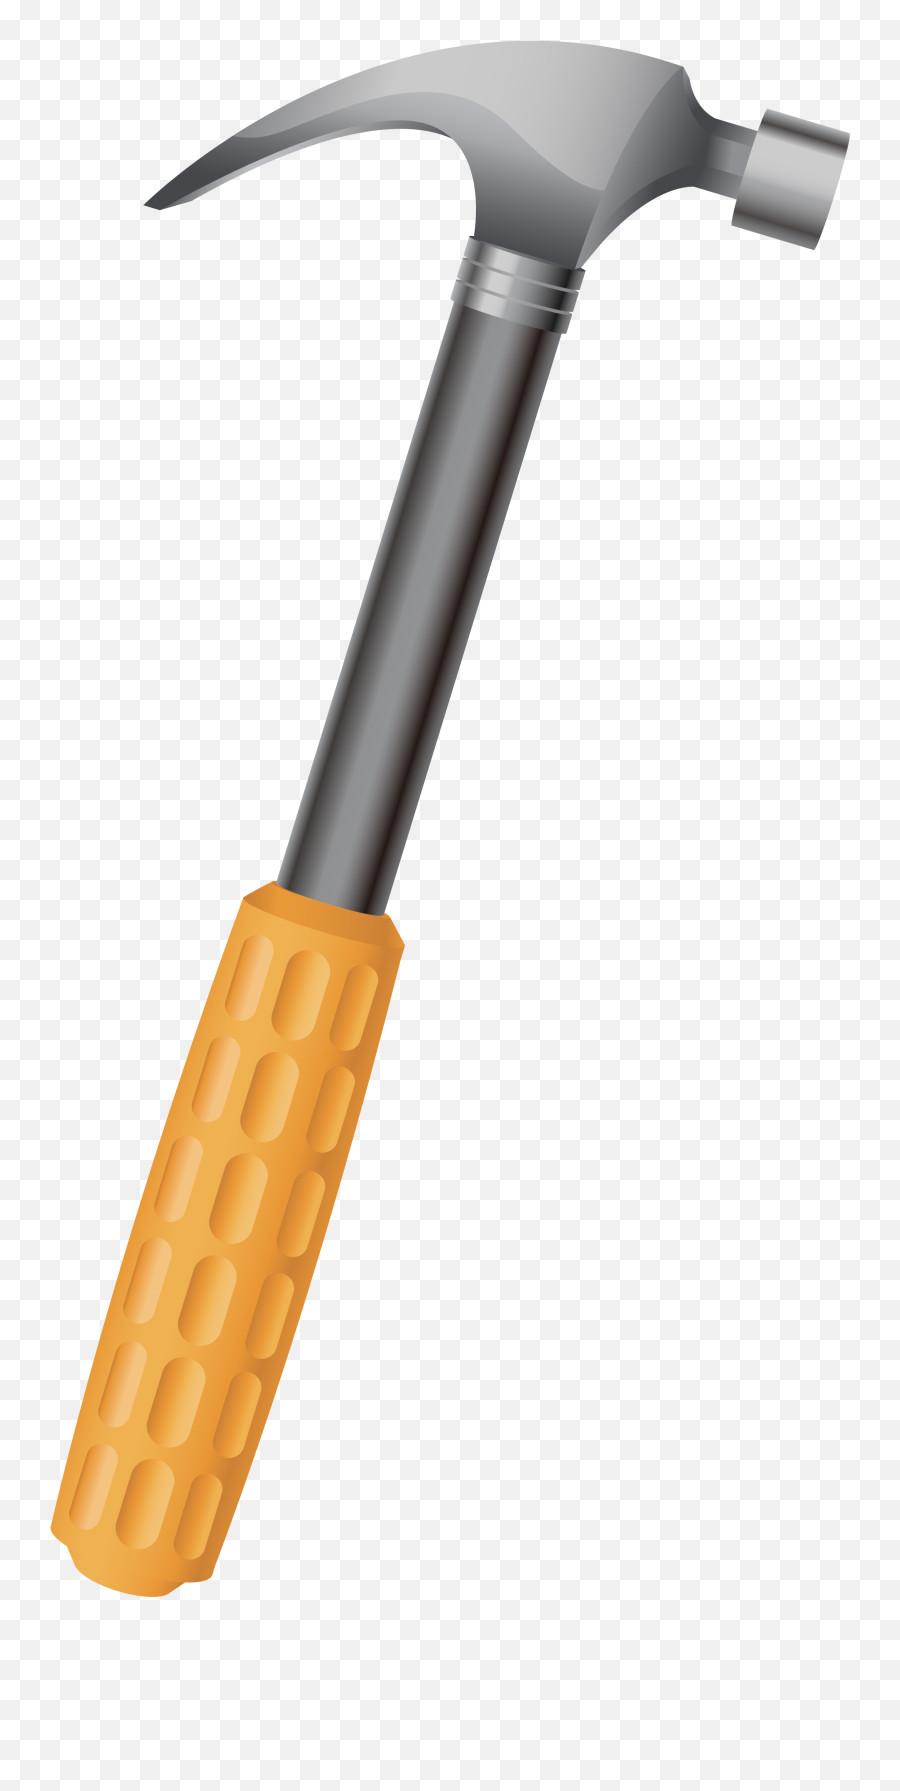 Hammer - Hammer With Transparent Background Emoji,Emoji Hammer